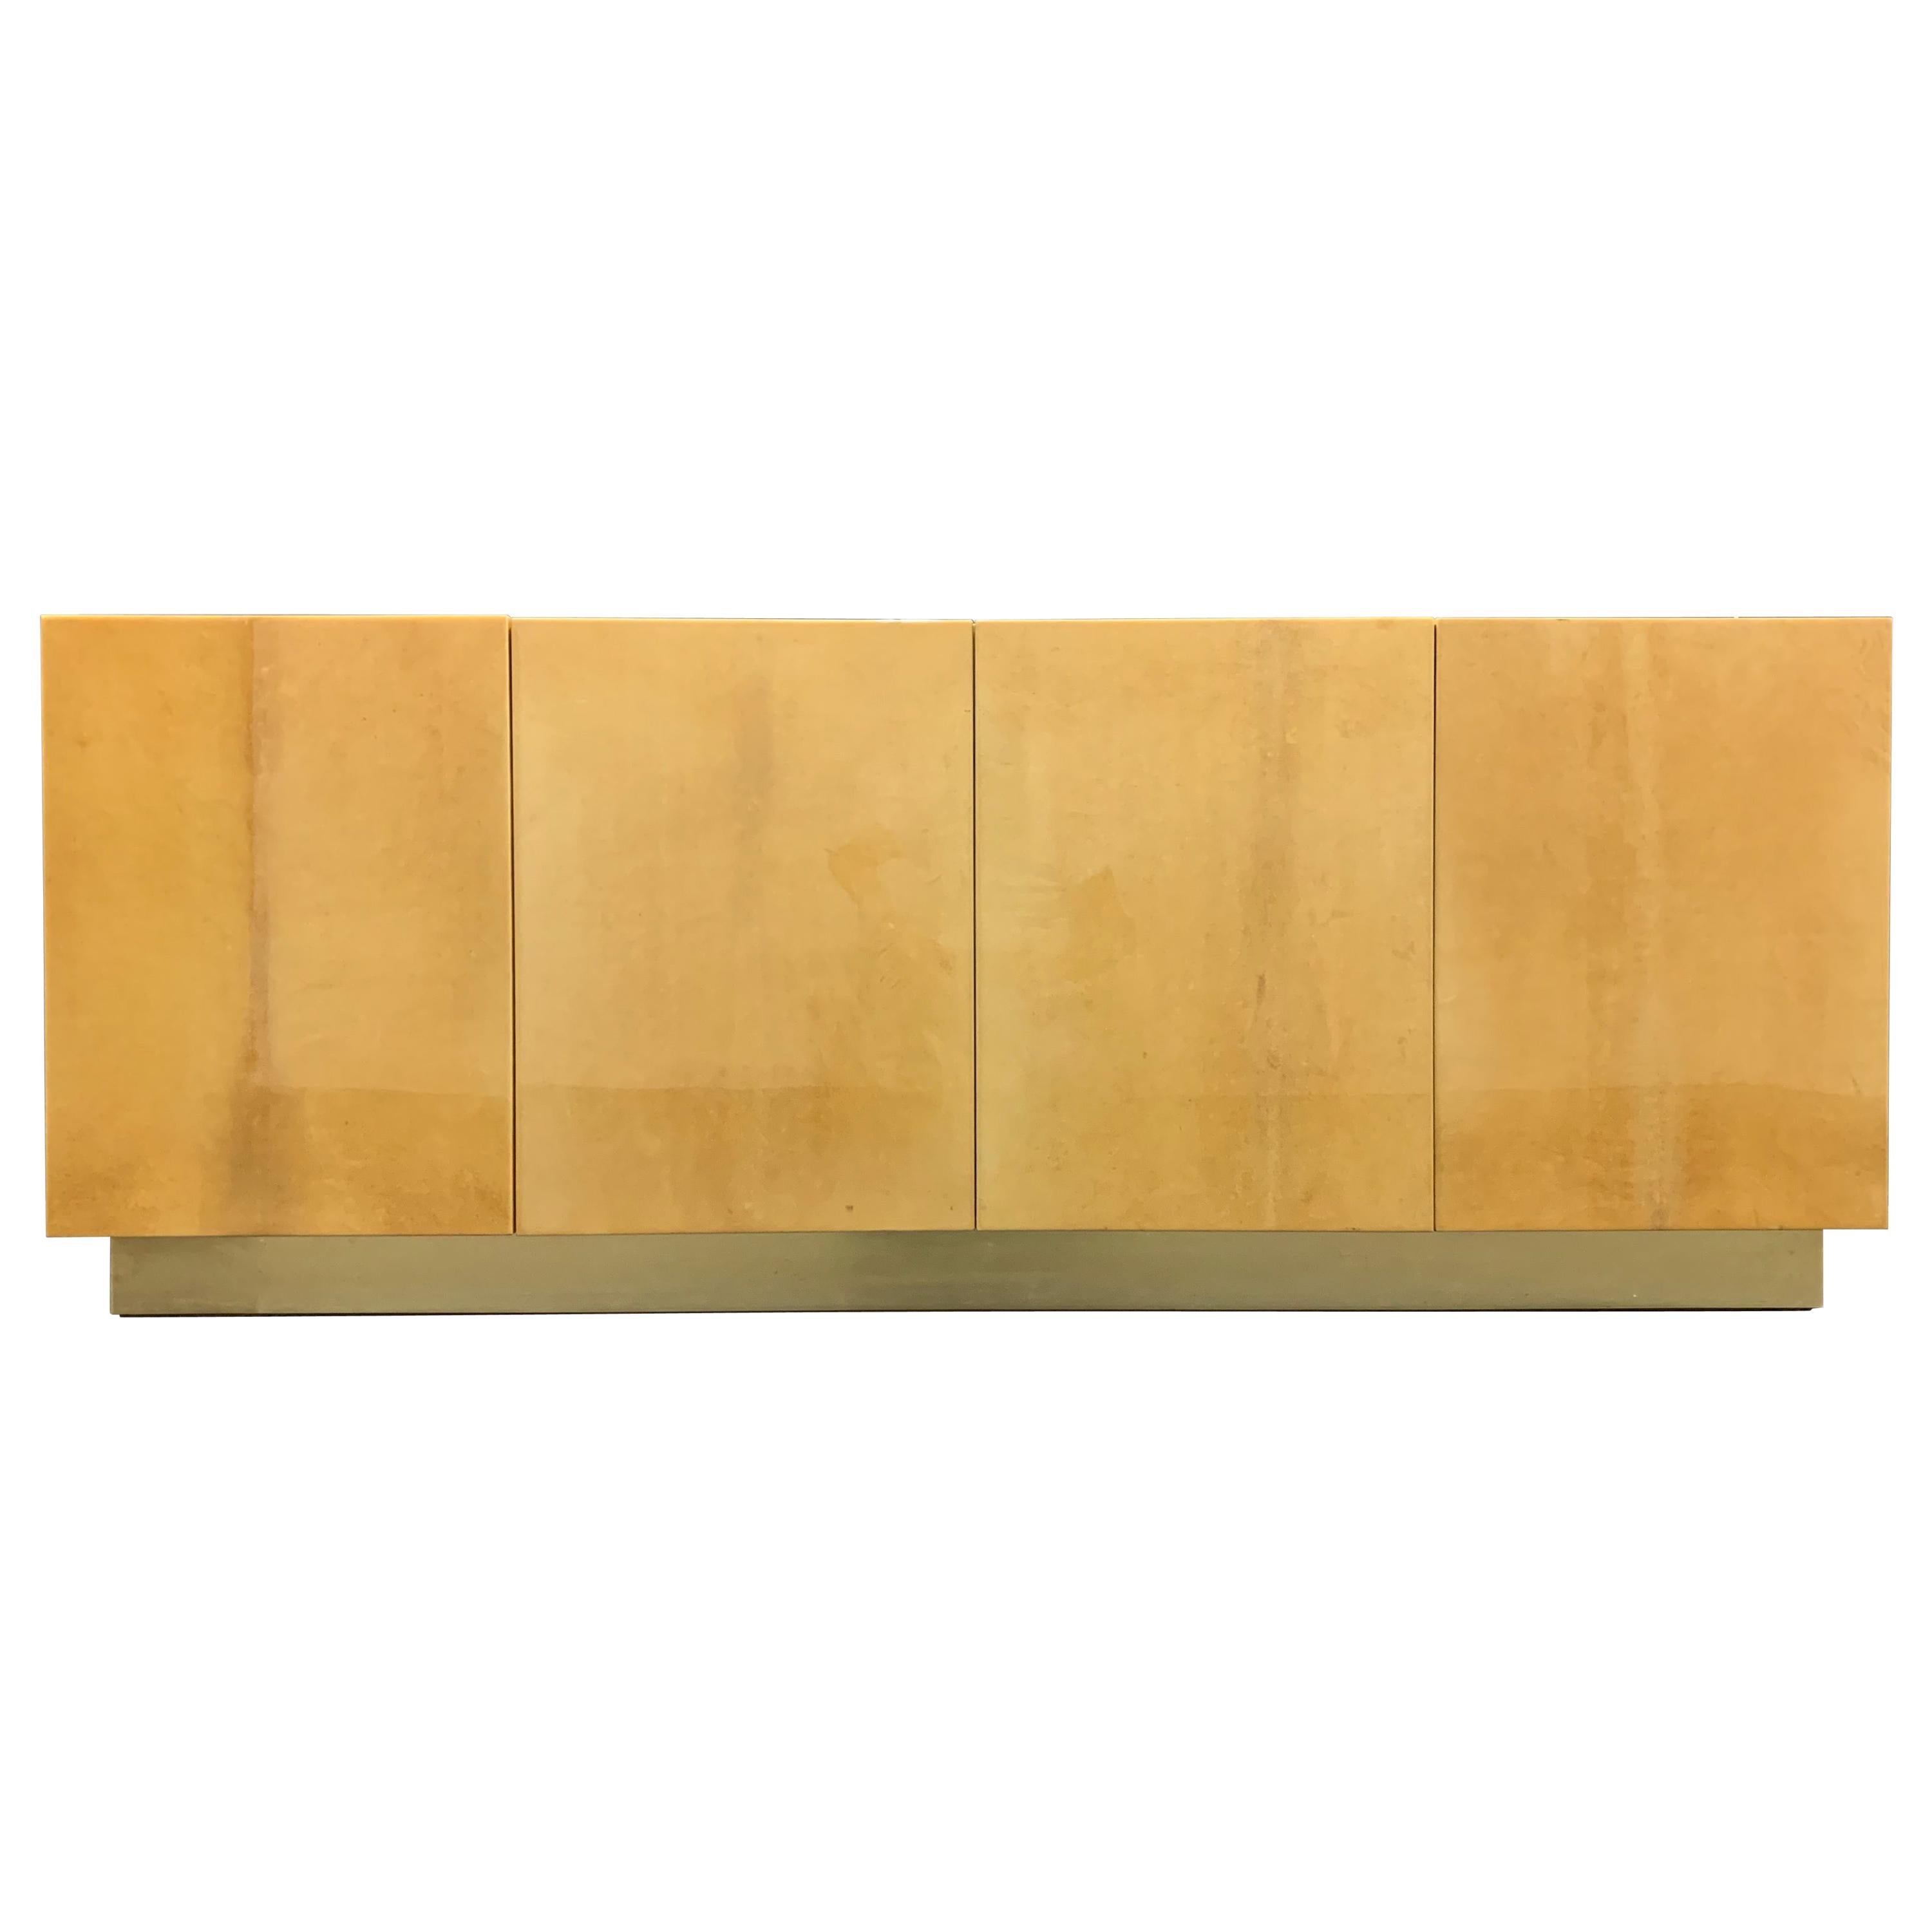 Ein atemberaubendes Sideboard oder Raumteiler aus Aldo Tura mit echter Rückenlehne